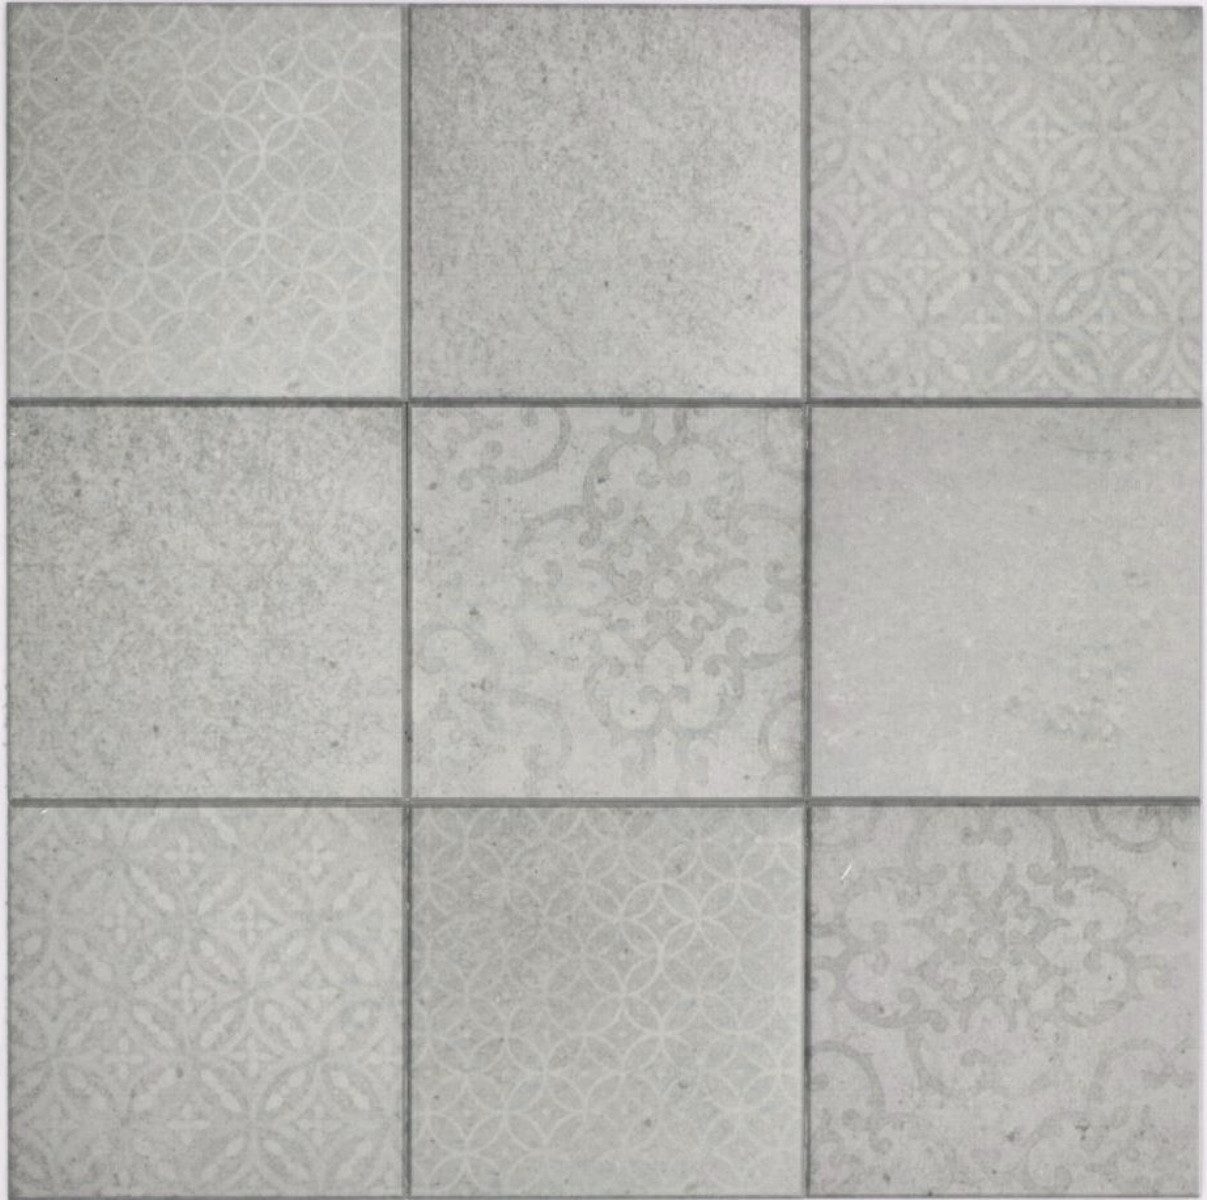 Mosani Mosaikfliesen 10 Stk. Wandpaneele in Steinoptik Retro Selbstklebend, Set, 10-teilig, Spritzwasserbereich geeignet, Küchenrückwand Spritzschutz